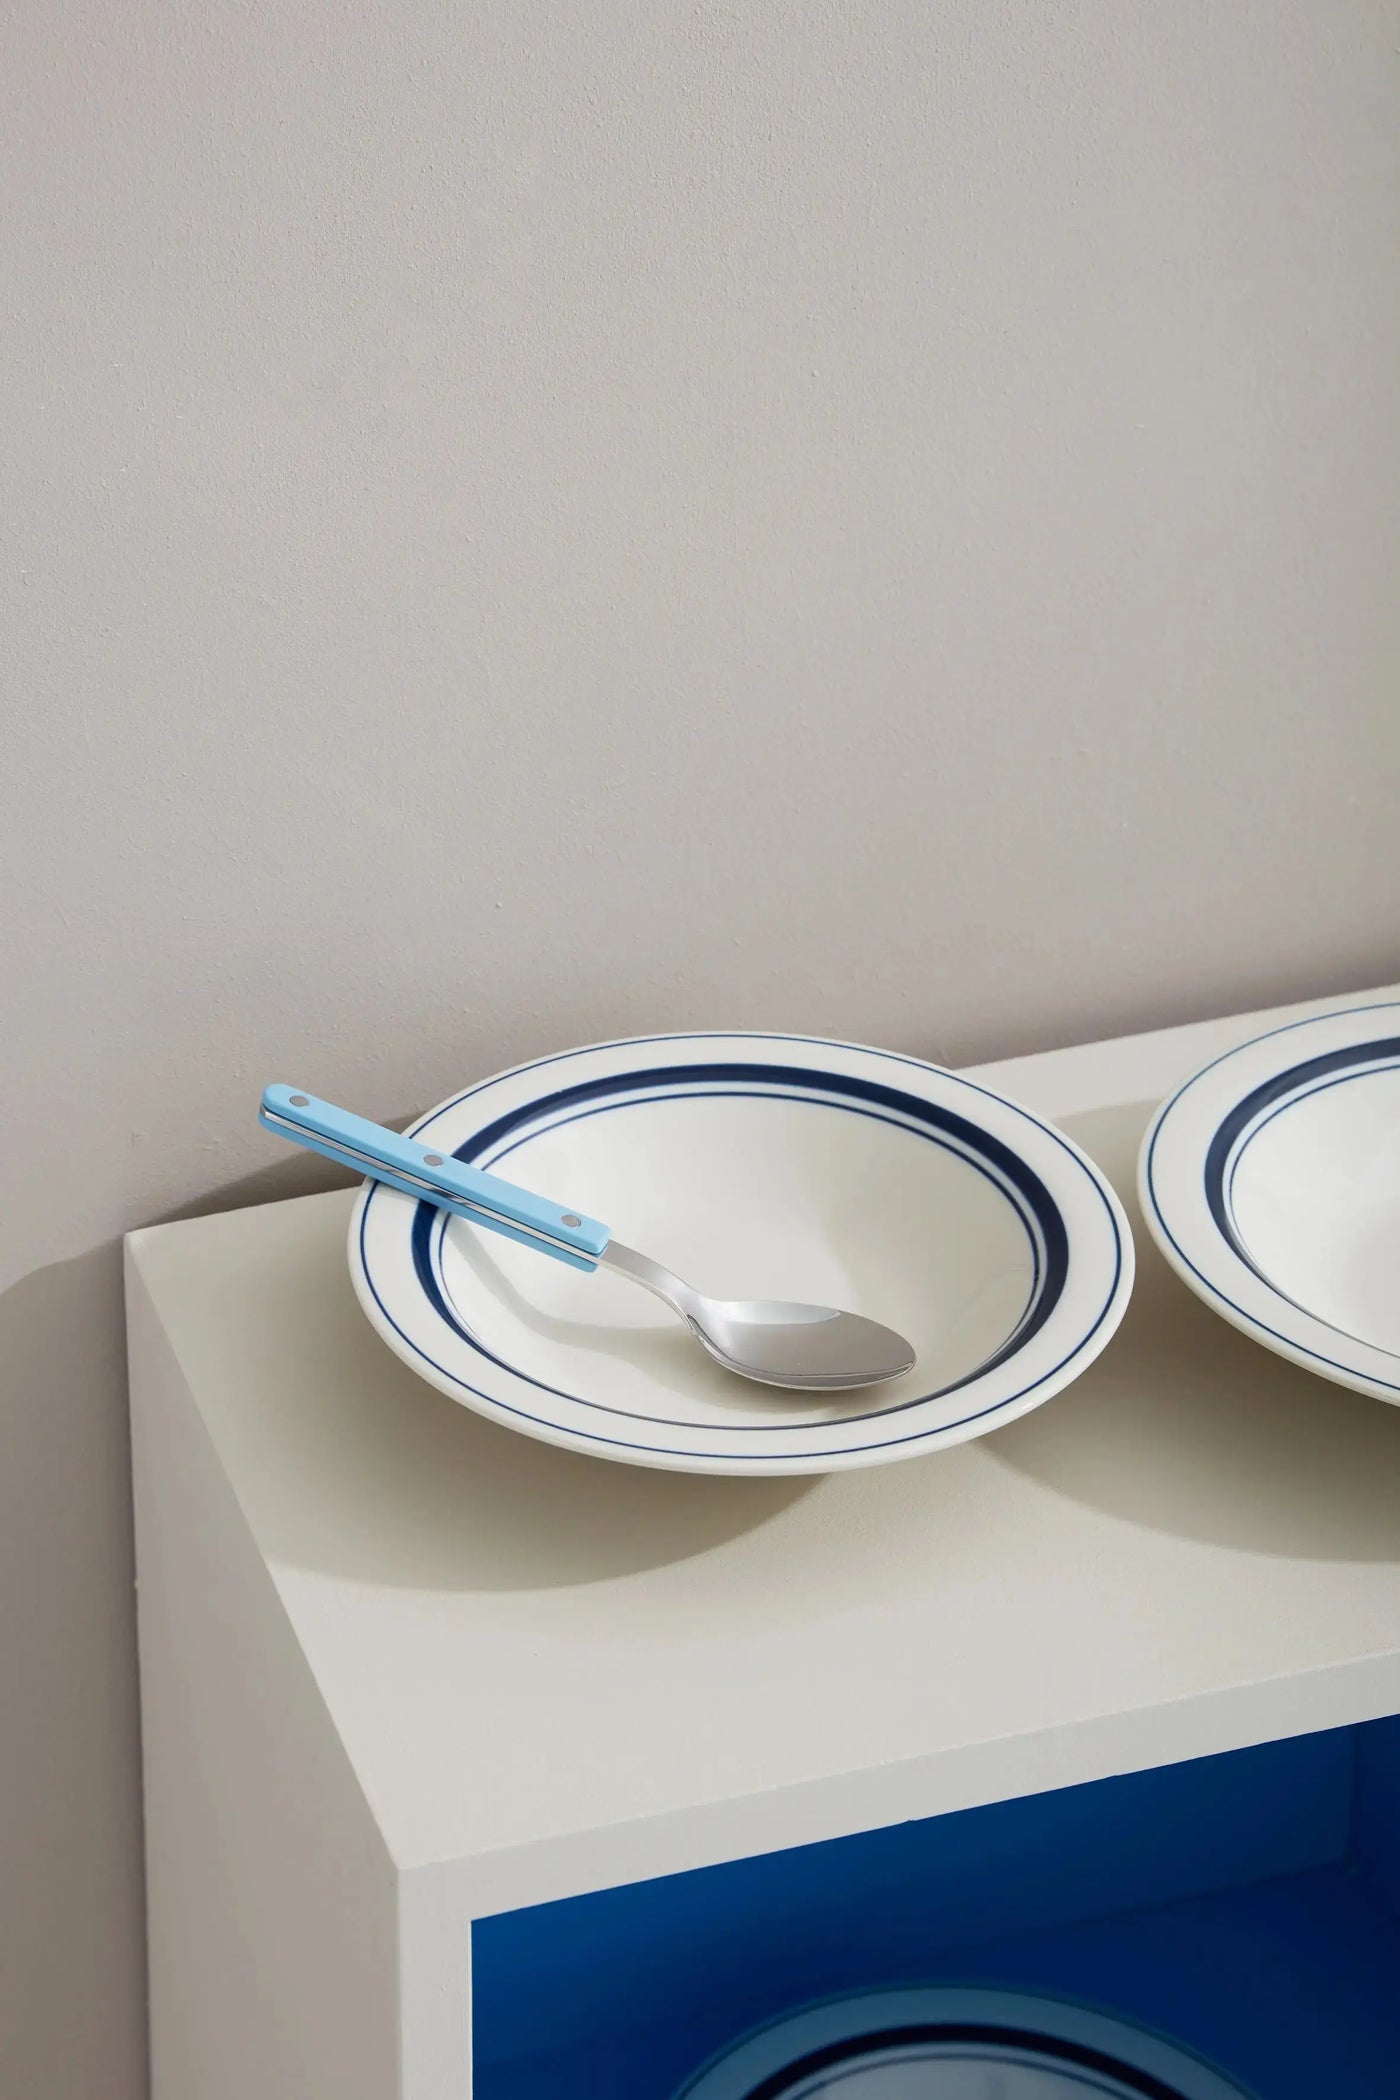 Dyb hvid tallerken med blå striber i keramik fra Japan | 23 cm Studio Hafnia